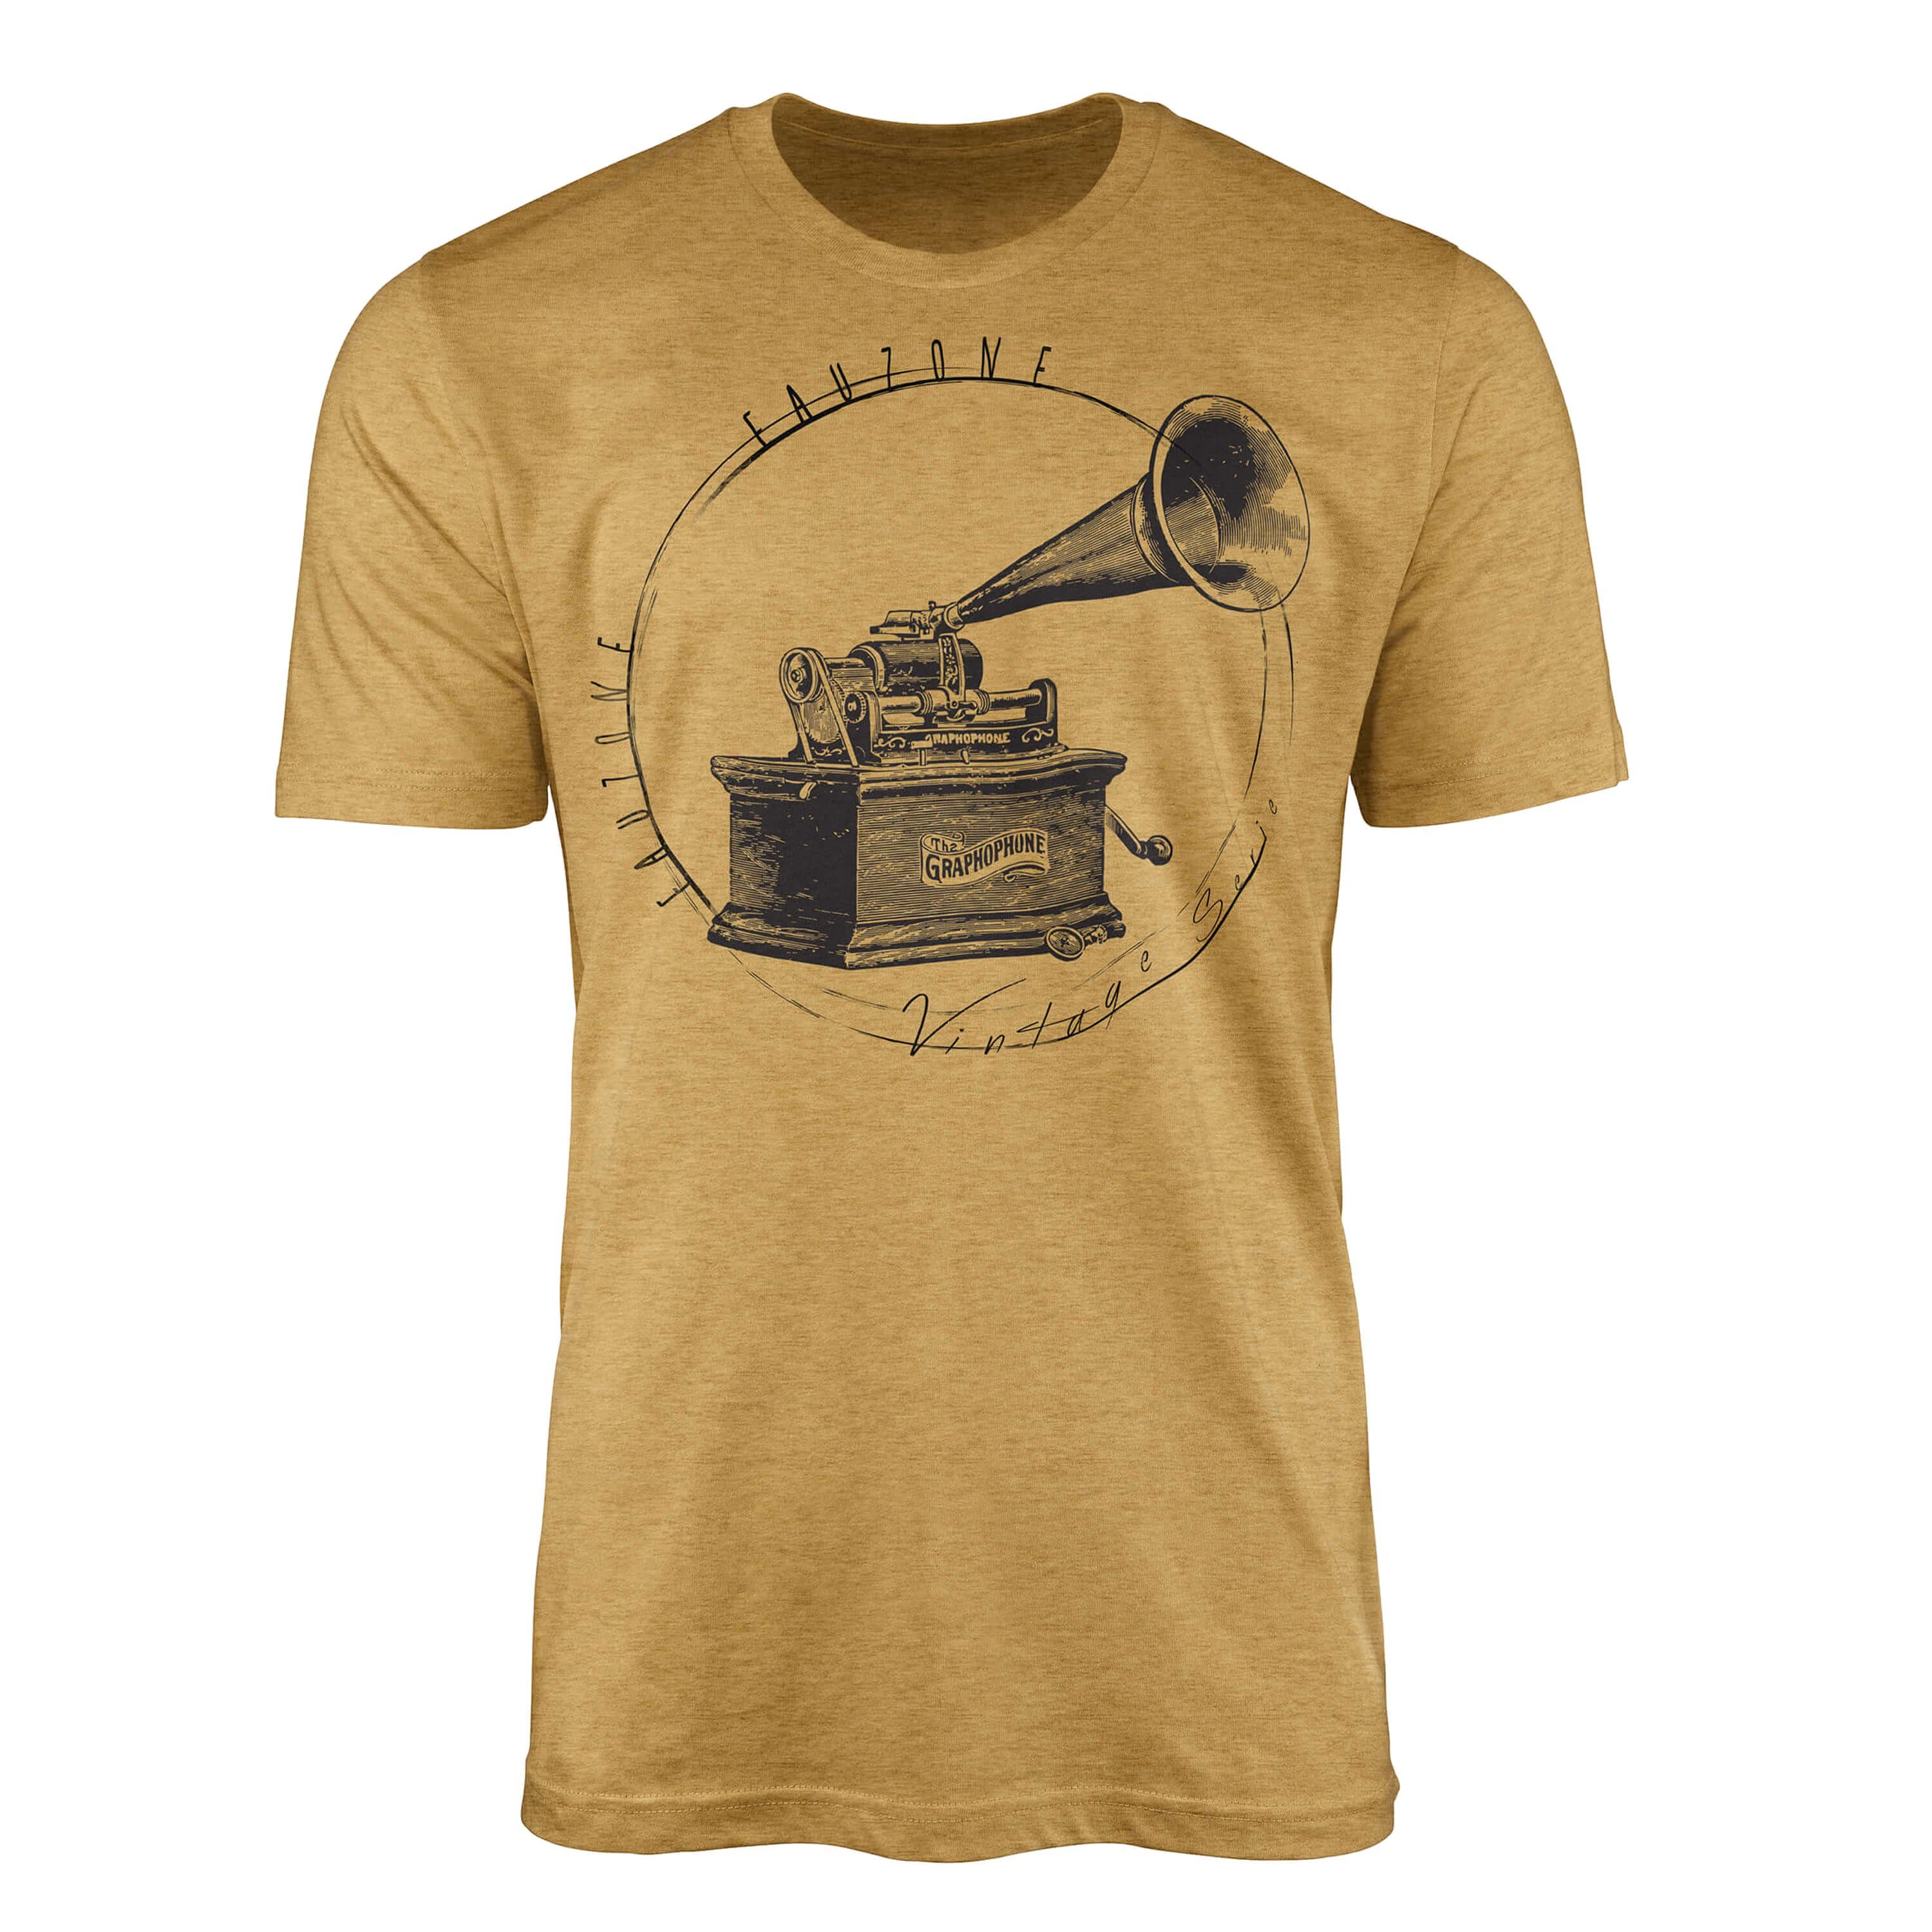 Sinus Art T-Shirt Vintage Herren T-Shirt Grammophon Antique Gold